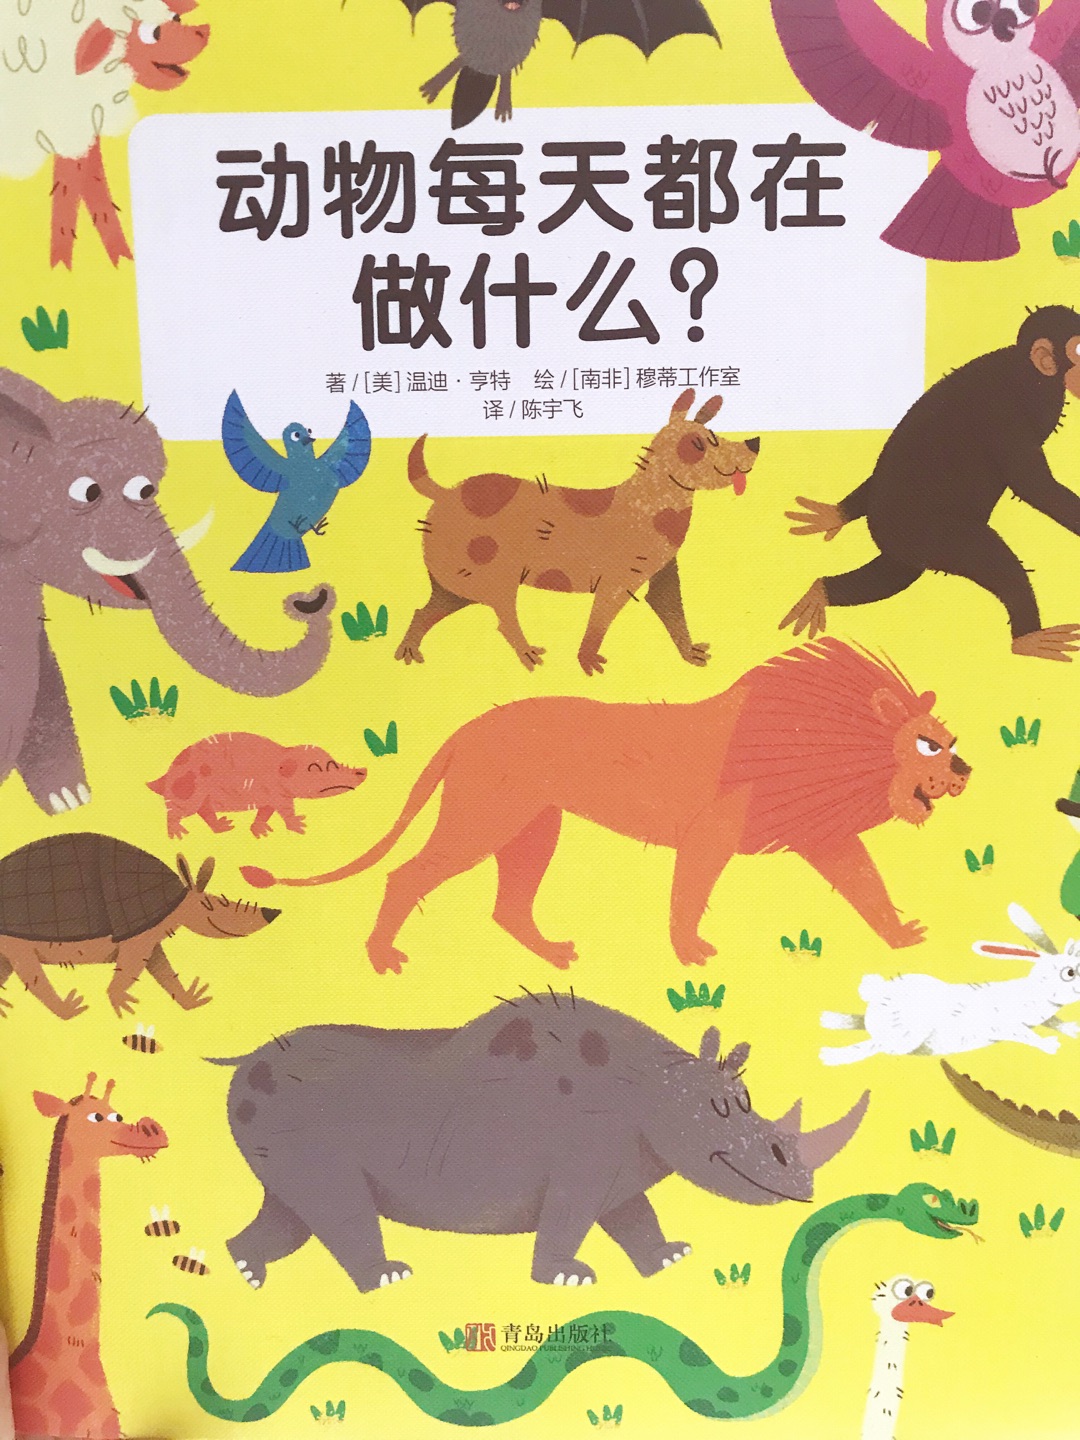 非常精美的一本大书，色彩鲜艳，画风独特，包含100多种可爱的动物，孩子非常喜欢！又买了五本送人！